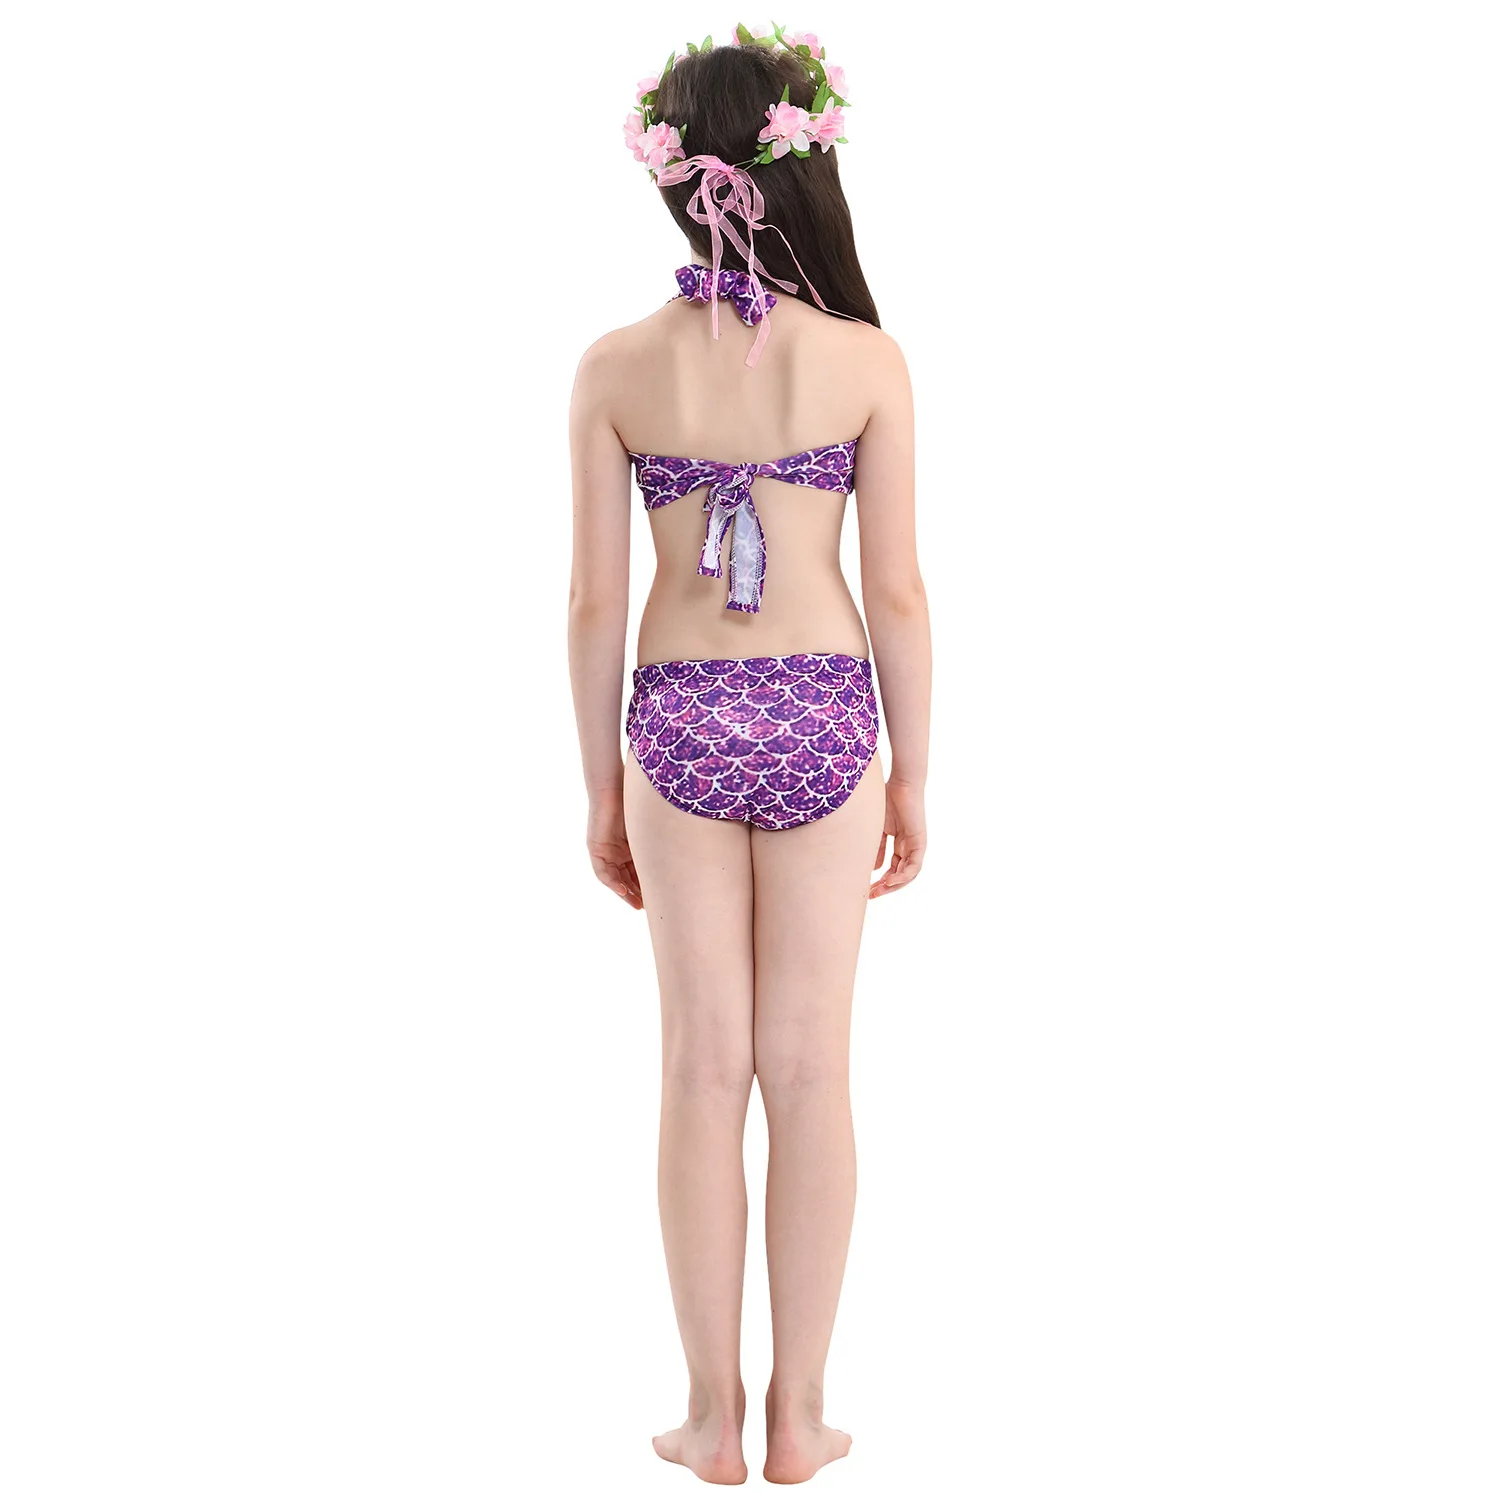 Детский маскарадный костюм с хвостом русалки для девочек, комплект бикини, купальный костюм